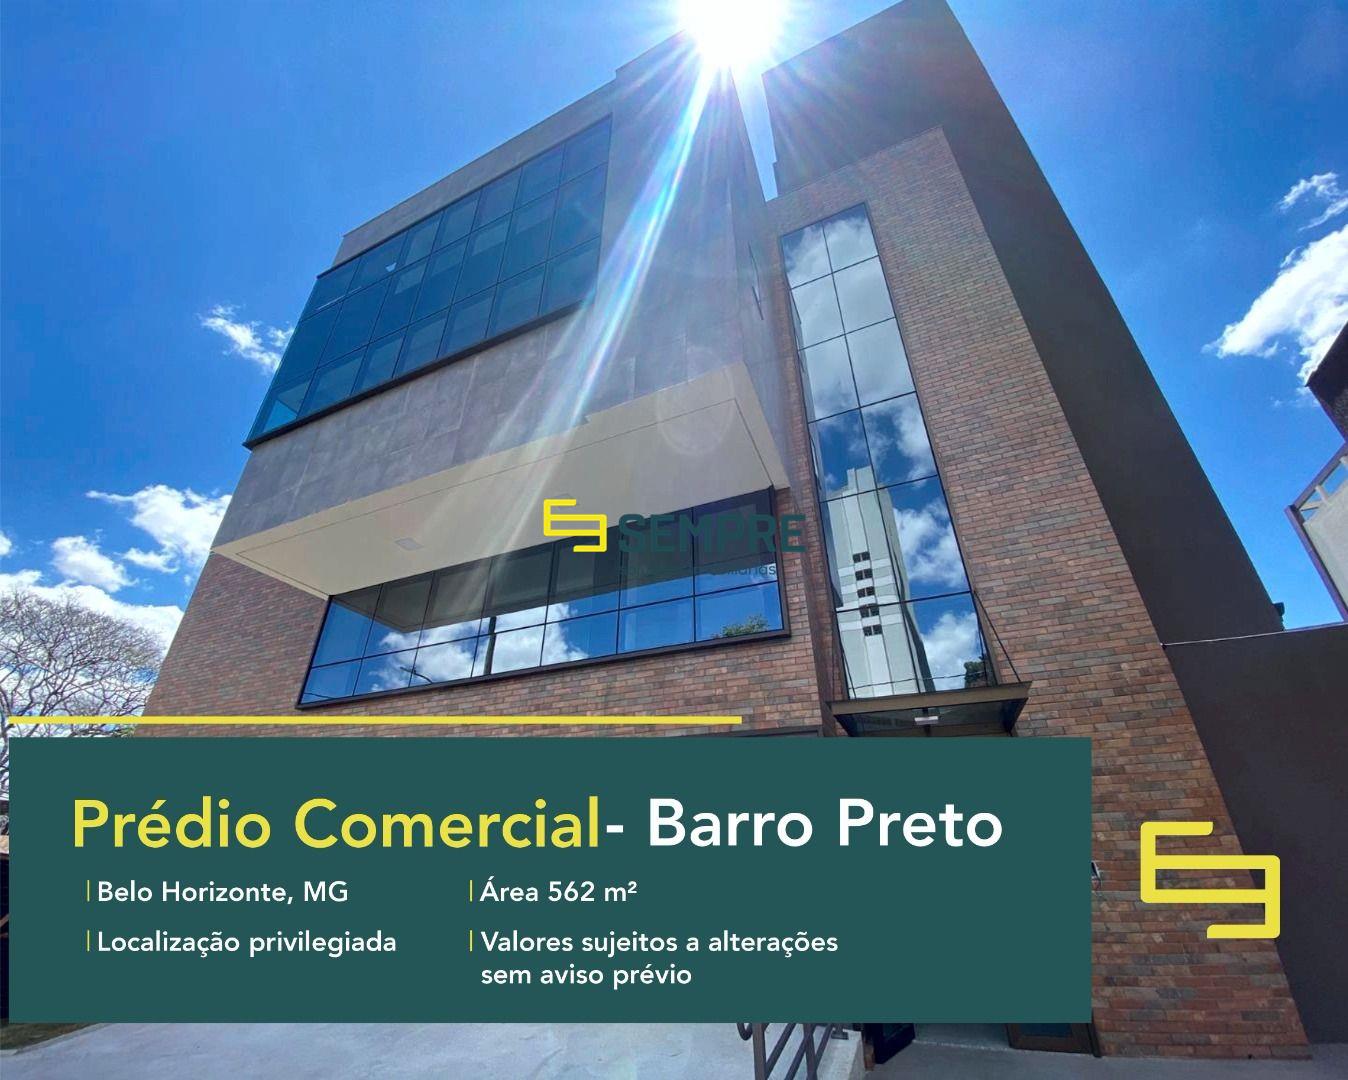 Prédio comercial para alugar no Barro Preto com 5 vagas em BH. Este prédio de salas comerciais para locação de salas em Belo Horizonte.